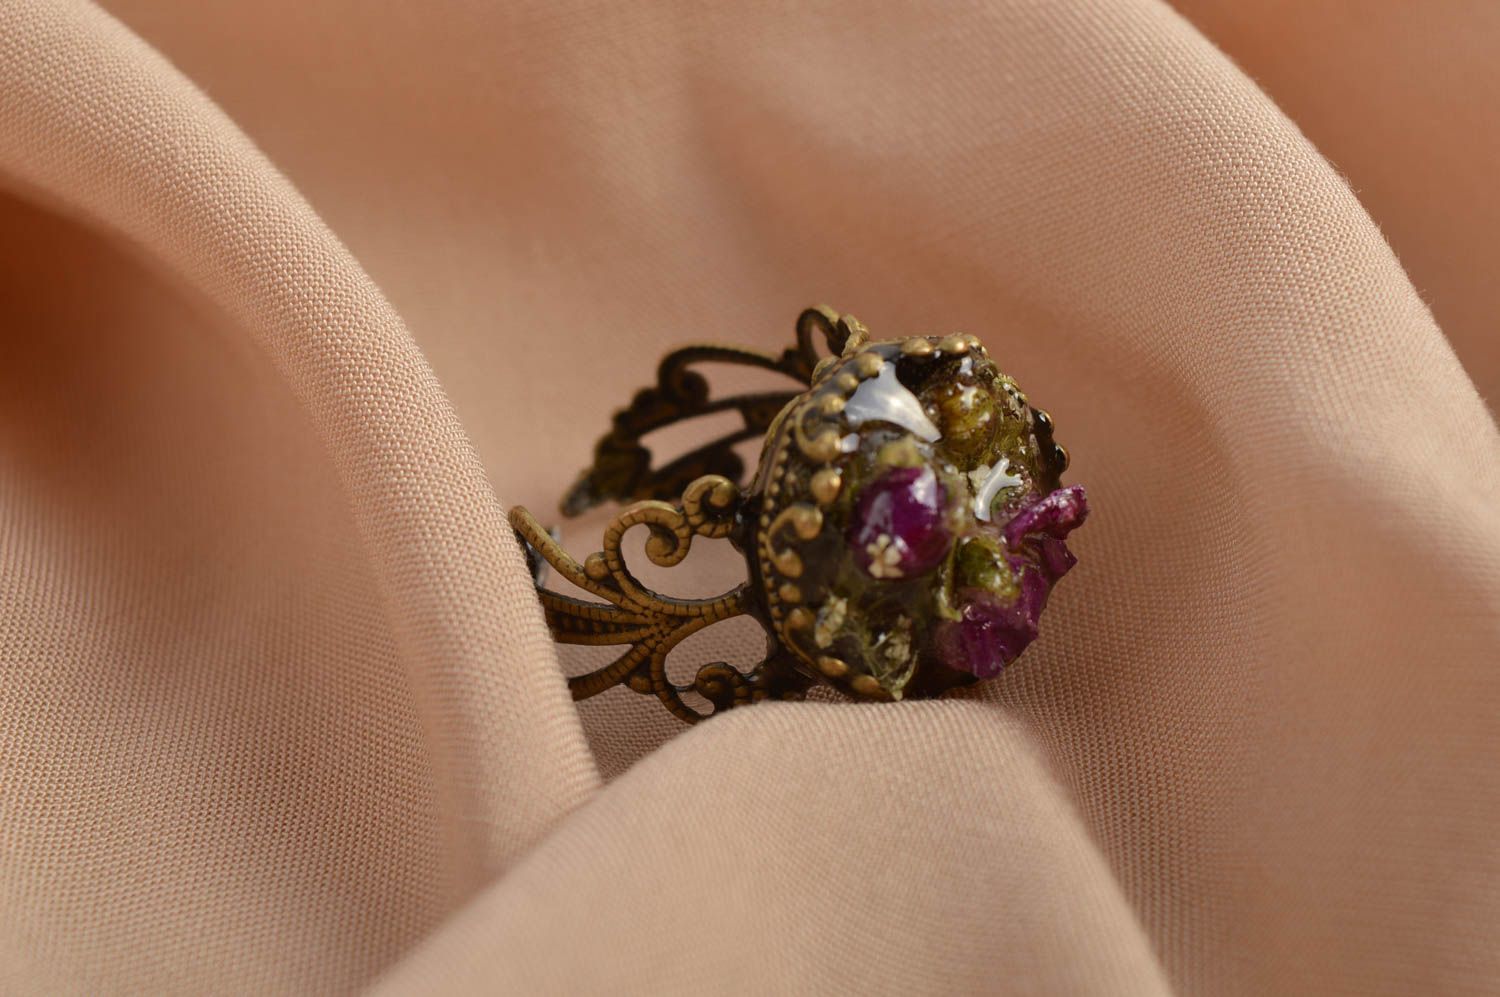 Кольцо ручной работы модное кольцо винтажное кольцо из эпоксидной смолы фото 1